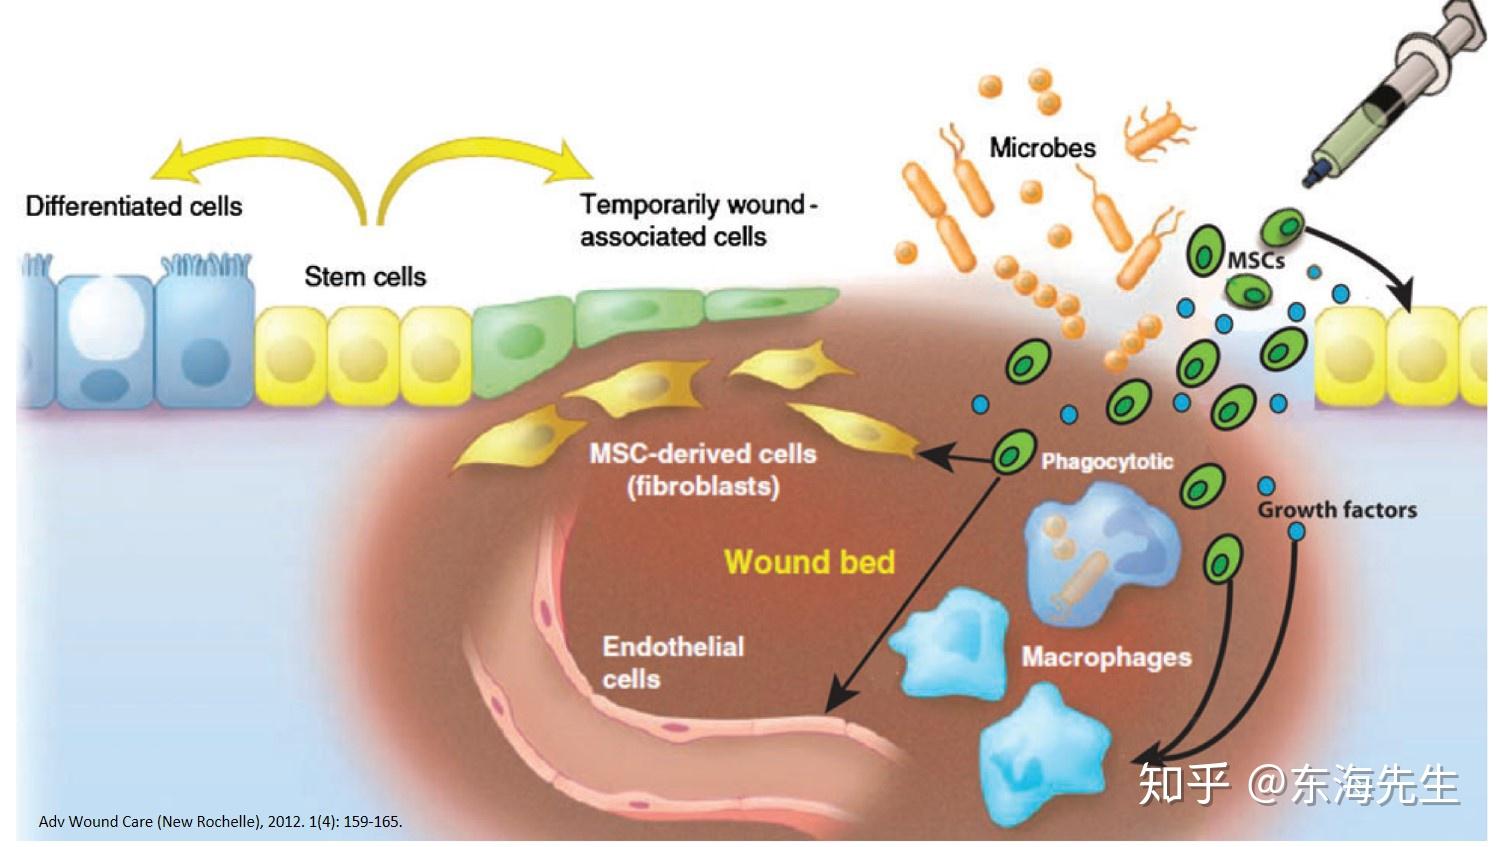 人原代脂肪干细胞-原代细胞-STR细胞-细胞培养基-镜像绮点生物